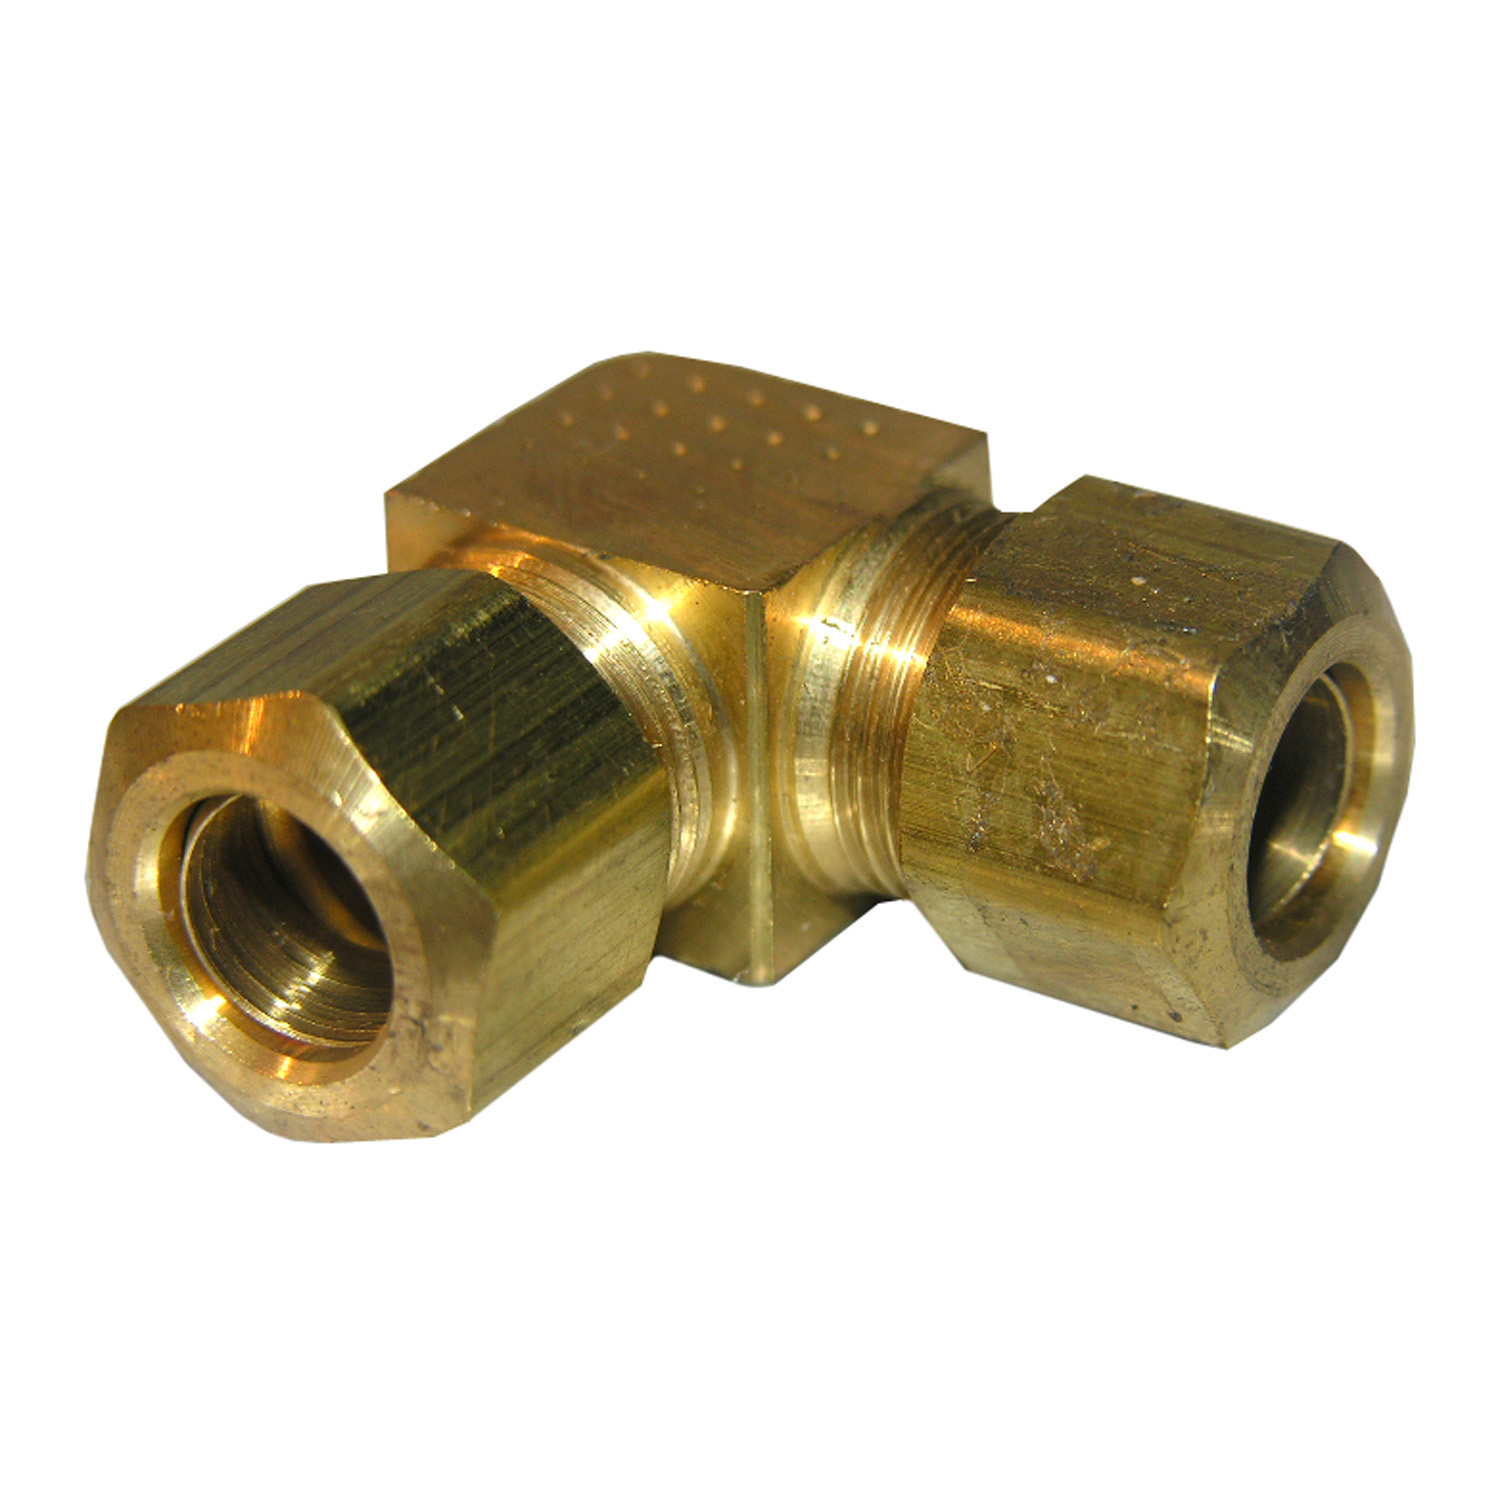 17-6531 Pipe Elbow, 3/8 in, Compression, 90 deg Angle, Brass, 150 psi Pressure